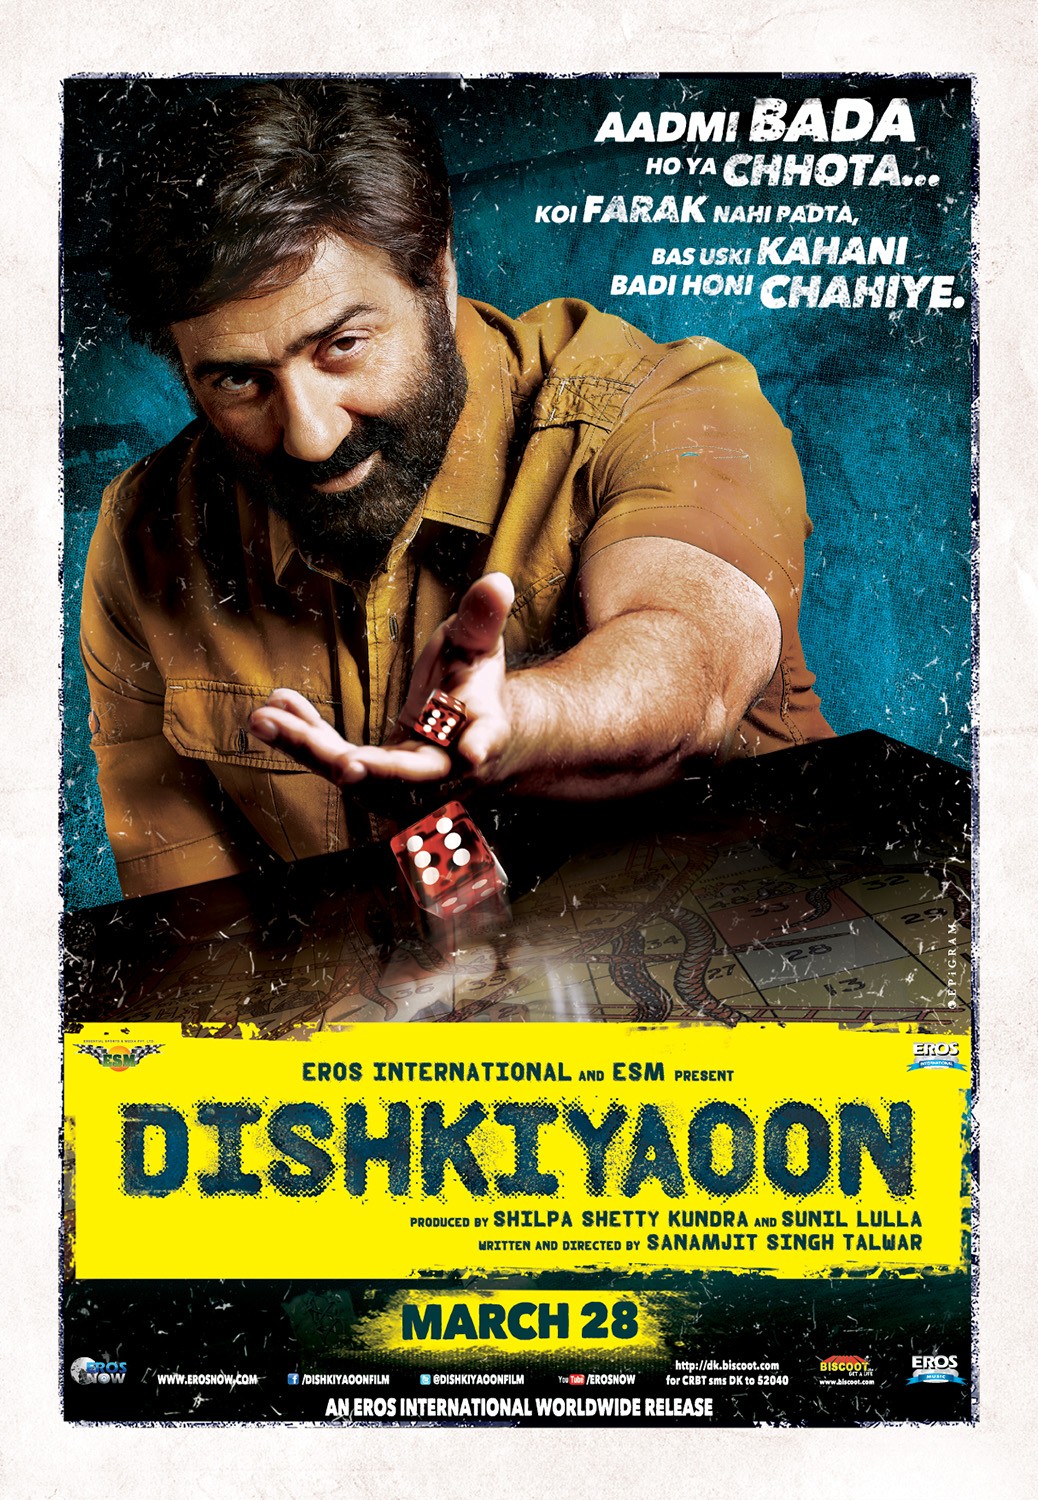 Extra Large Movie Poster Image for Dishkiyaoon (#3 of 5)